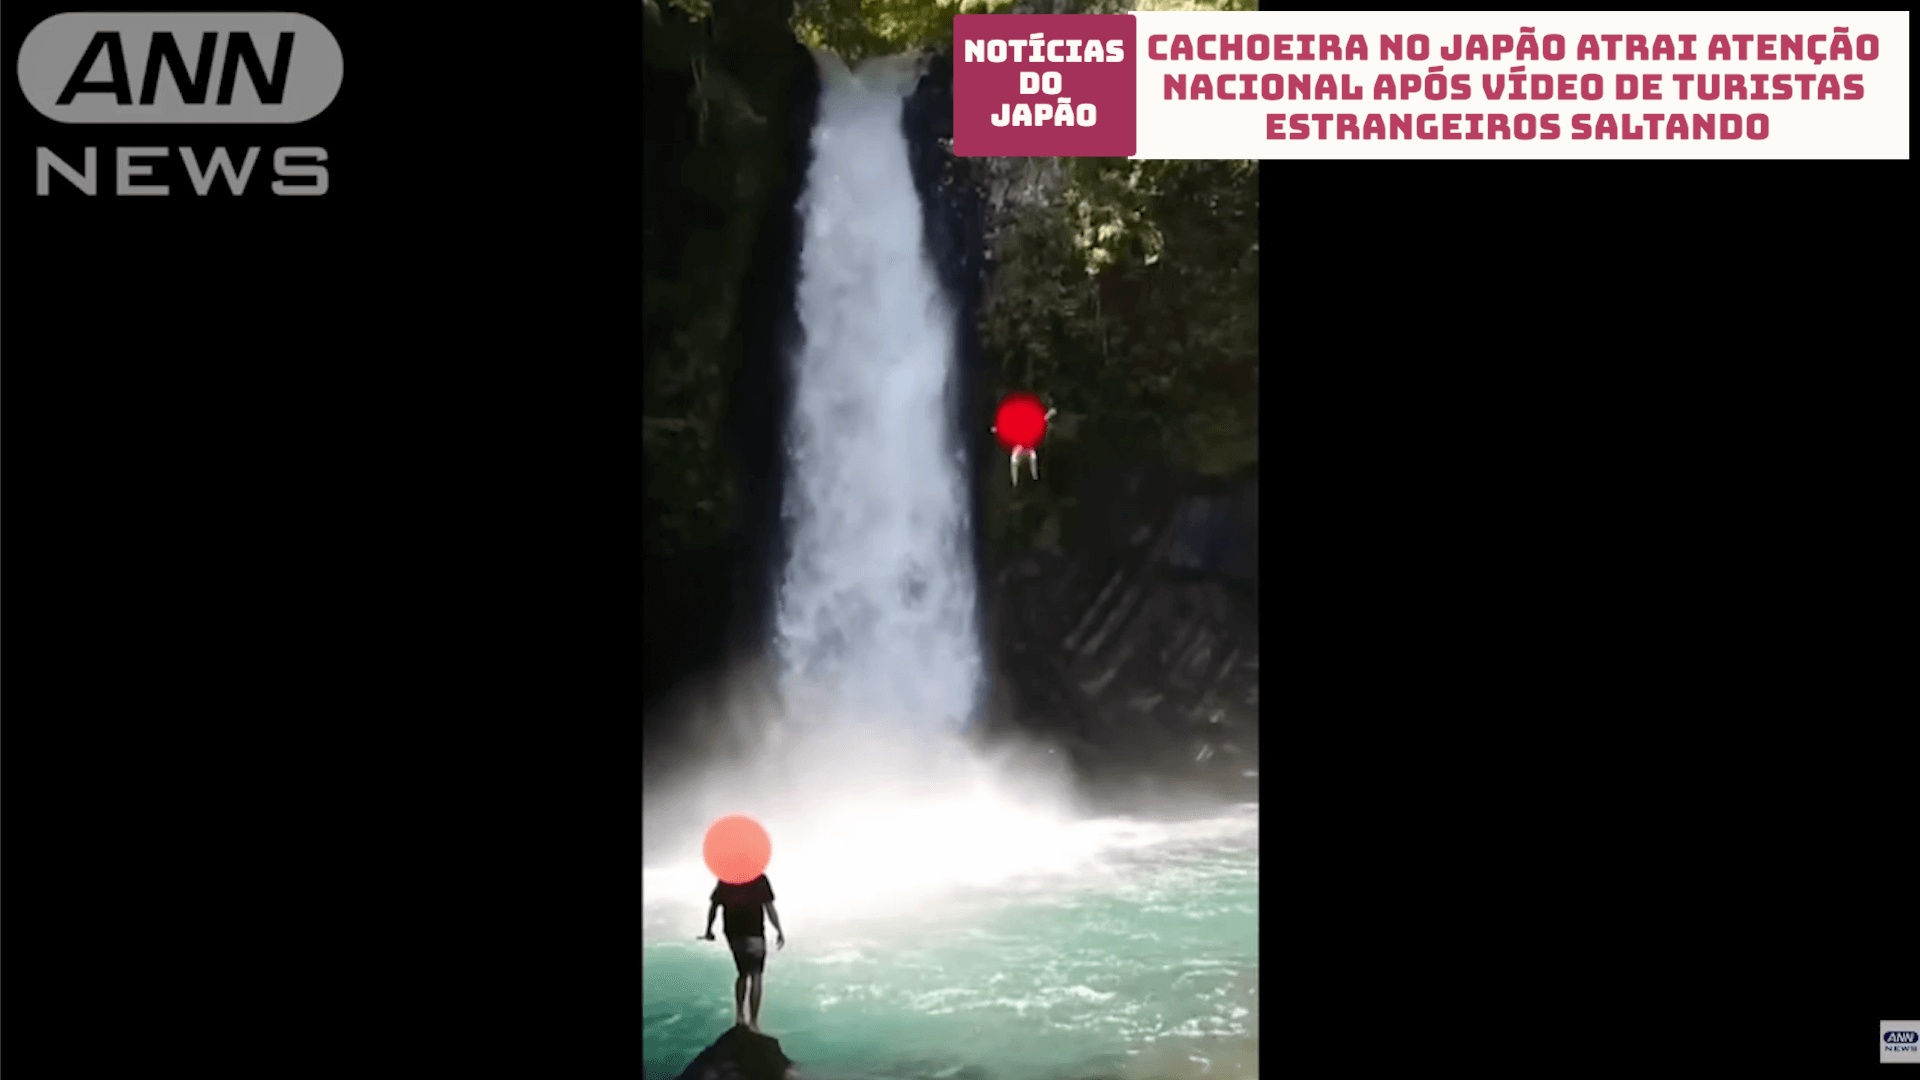 Cachoeira no Japão atrai atenção nacional após vídeo de turistas estrangeiros saltando